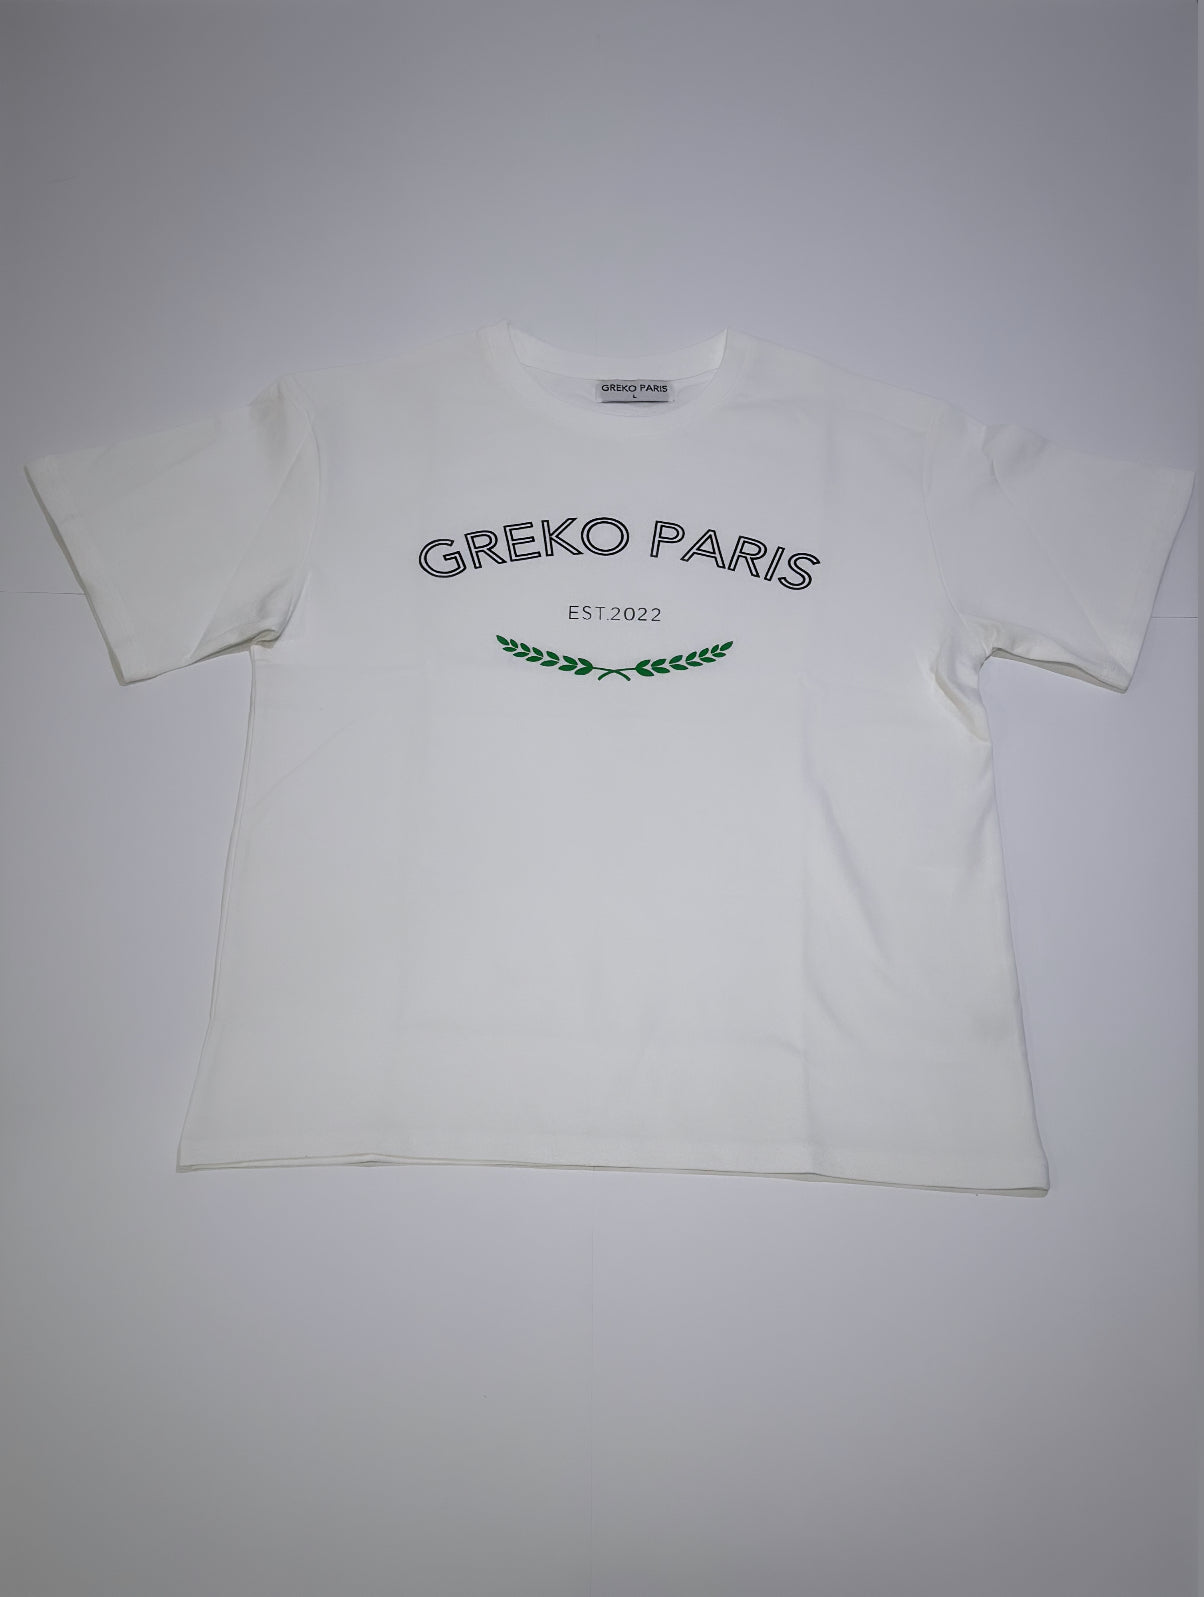 Greko Paris White/Greek laurel leaves Tee